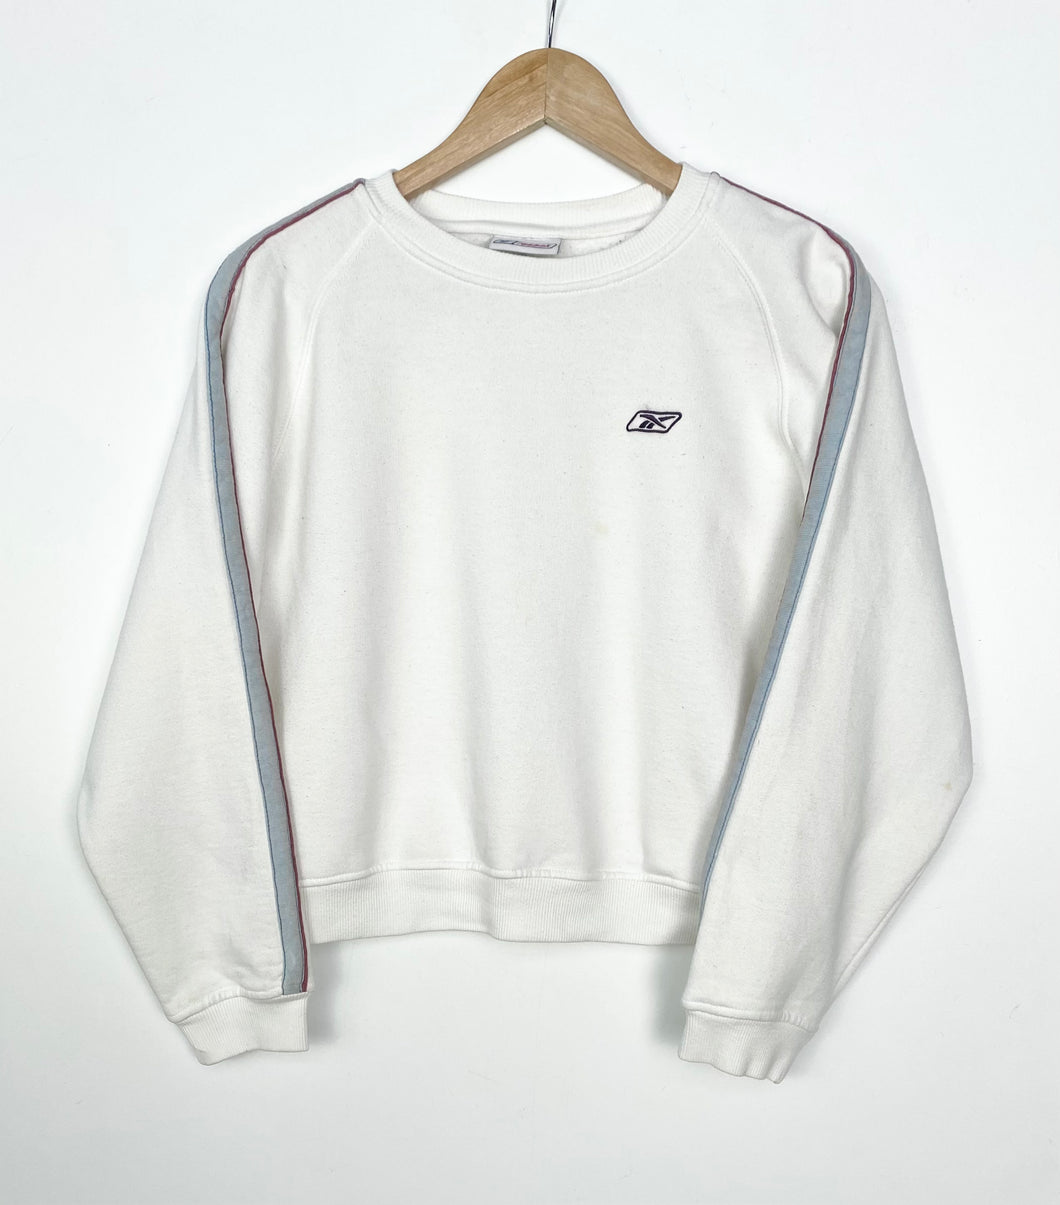 90s Reebok cropped sweatshirt (S)